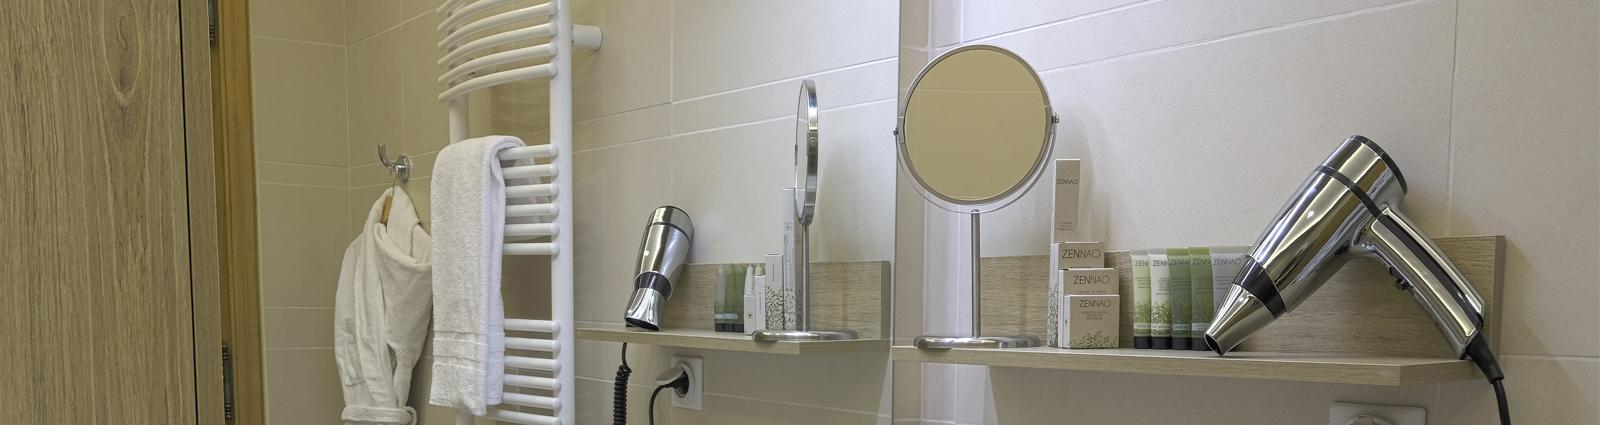 Zur Ausstattung von Badezimmern gehören auch Vergrößerungsspiegel. Letzterer ist ein unverzichtbares Zubehör im Hotelgewerbe, er trägt zur Zufriedenheit Ihrer Gäste bei und verbessert das Angebot an Qualitätsleistungen.